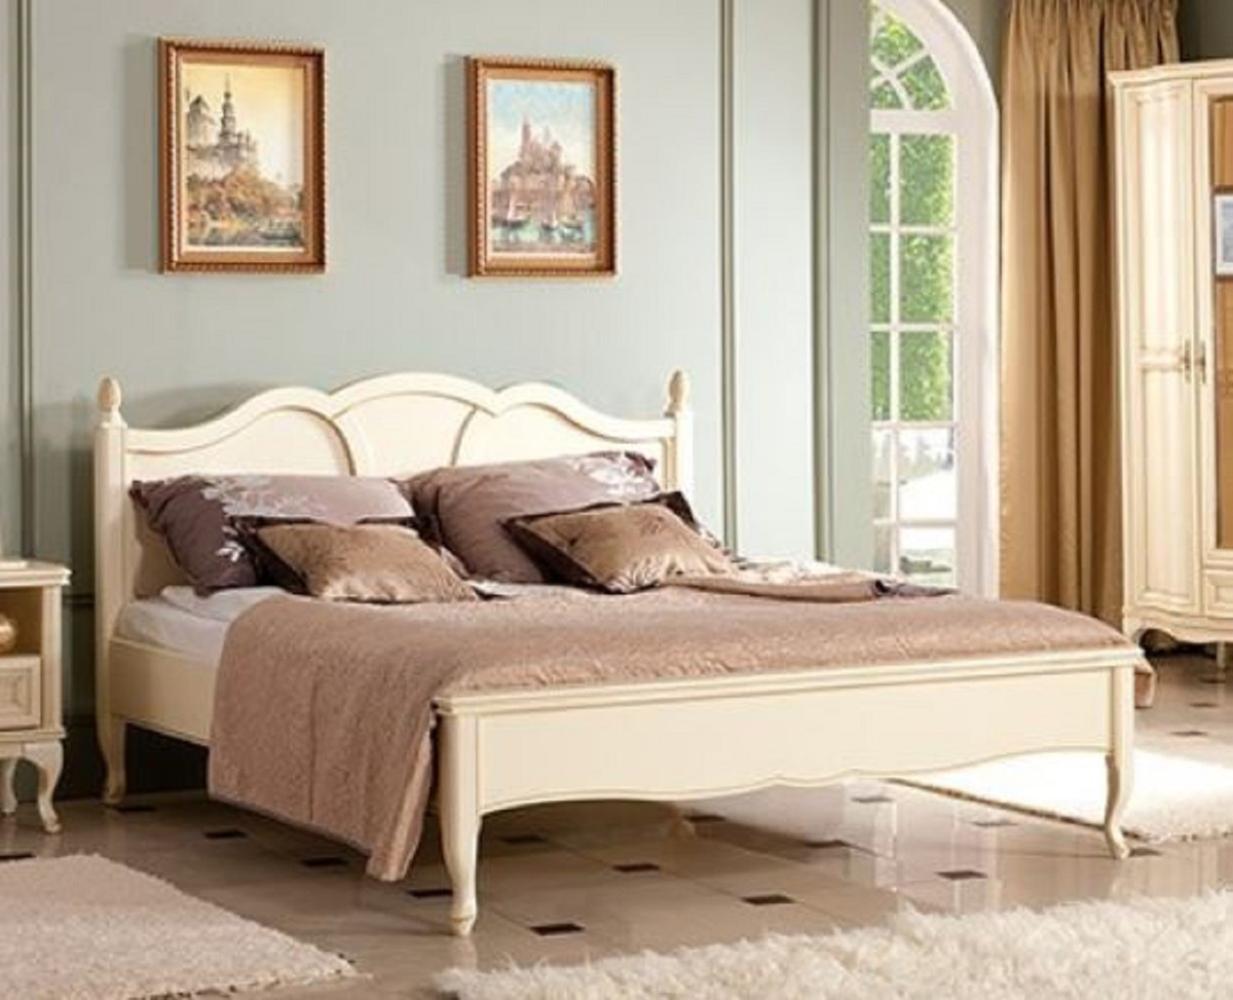 Casa Padrino Luxus Jugendstil Doppelbett Cremefarben 194 x 214,2 x H. 107,5 cm - Elegantes Massivholz Bett - Barock & Jugendstil Schlafzimmer Möbel Bild 1